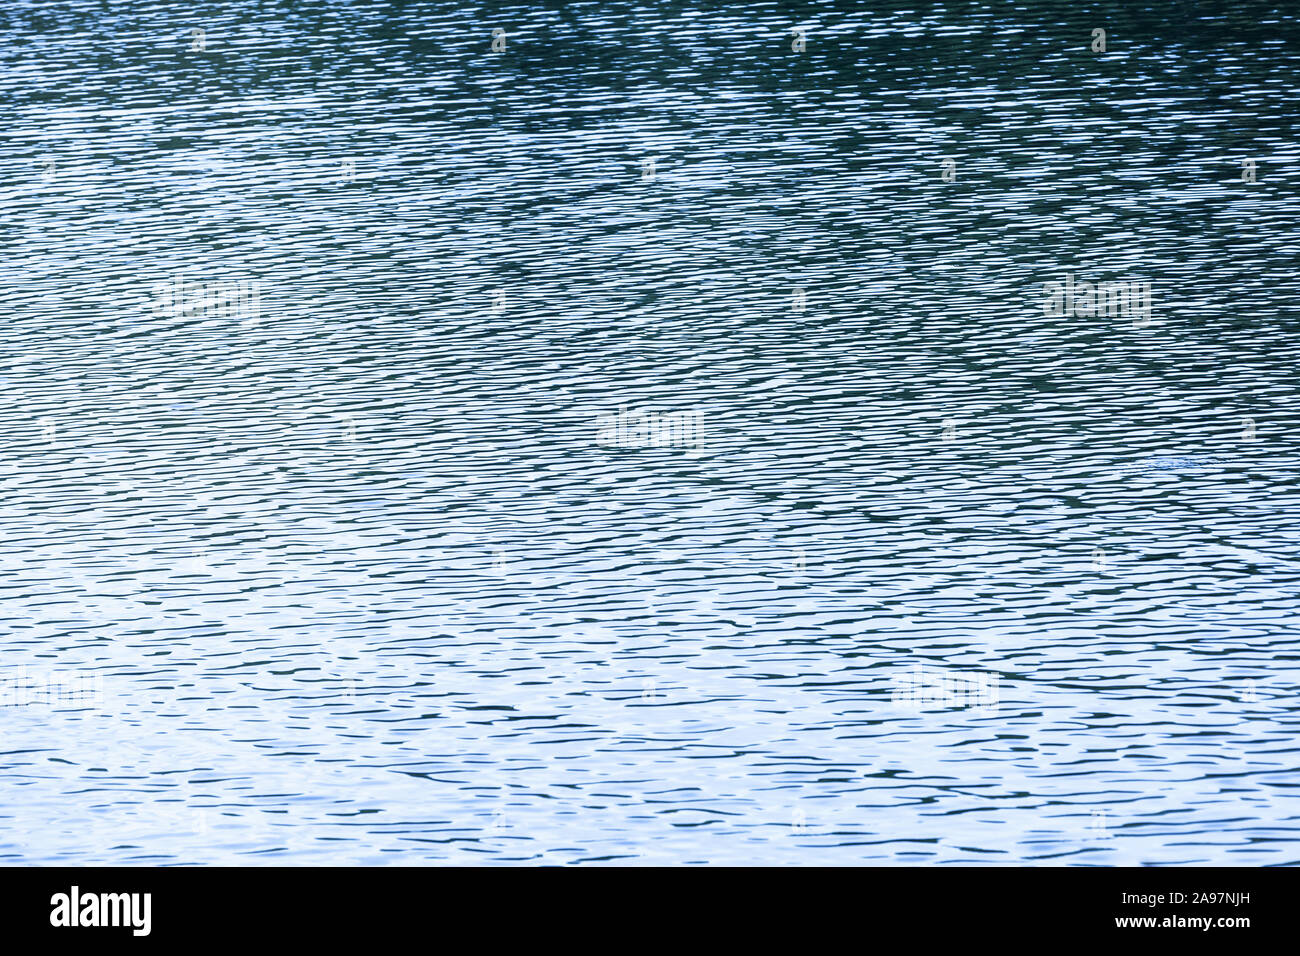 Blue sea water Oberfläche mit Welligkeit Muster. Natürliche Hintergrund Foto Textur Stockfoto